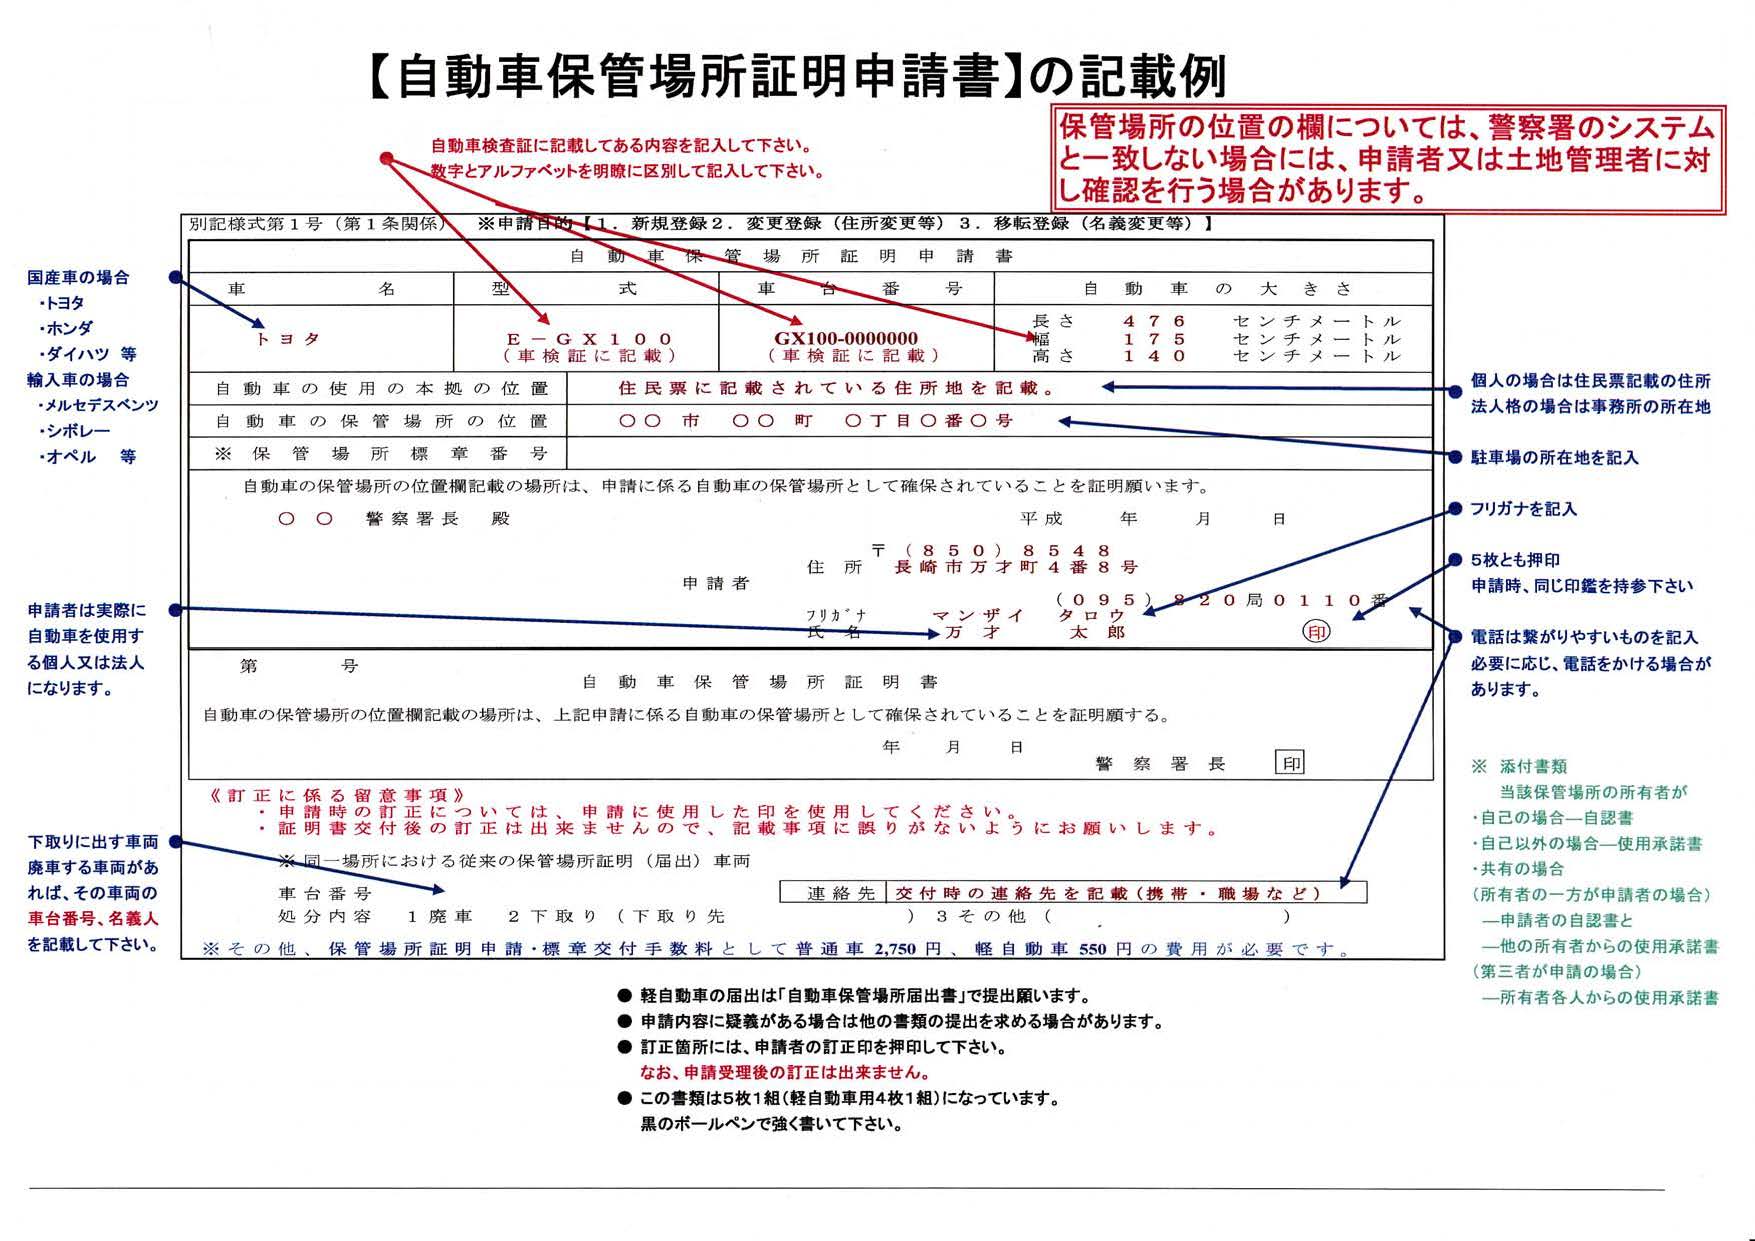 長崎の自動車保管場所証明申請書の記入例